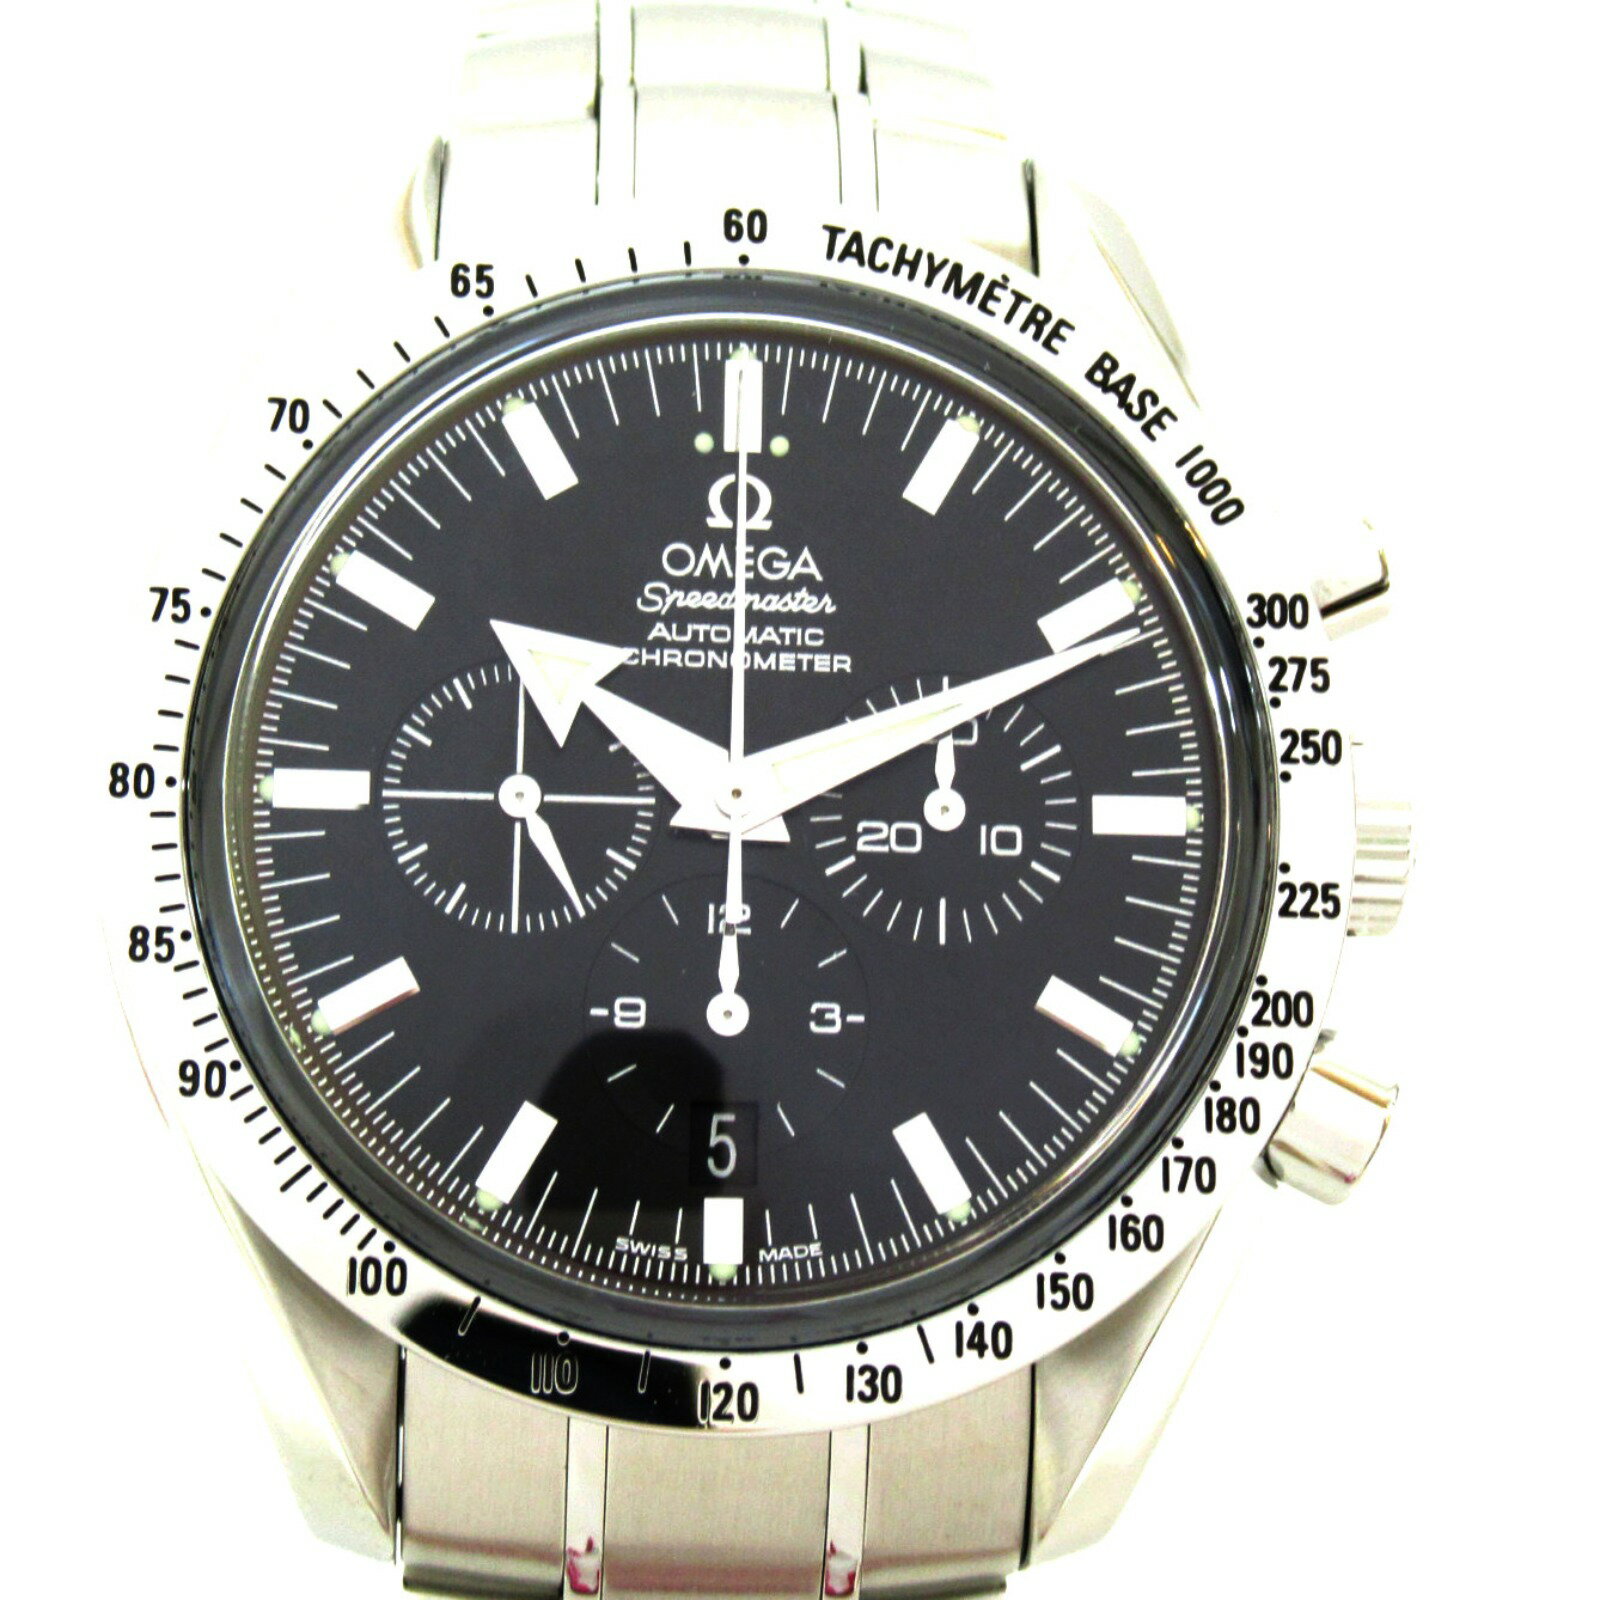 オメガ OMEGA スピードマスター ブロードアロー腕時計 ウオッチ 腕時計 時計 ステンレススチール メンズ ブラック系 ブラック 3511.5 【中古】 | ブランド ブランド時計 ブランド腕時計 ウォッチ